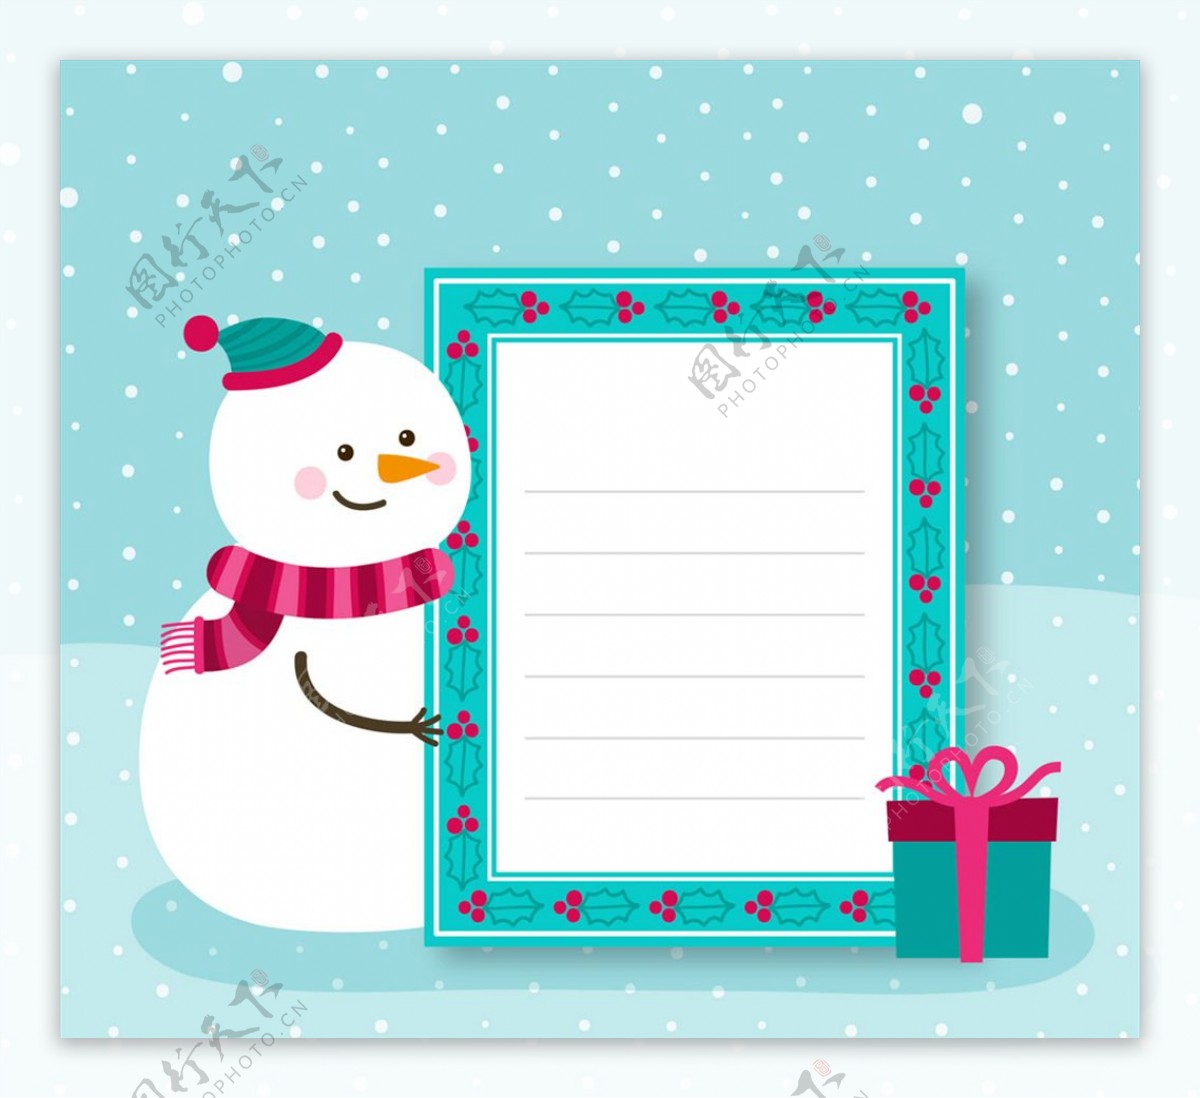 可爱圣诞节雪人装饰信纸矢量素材